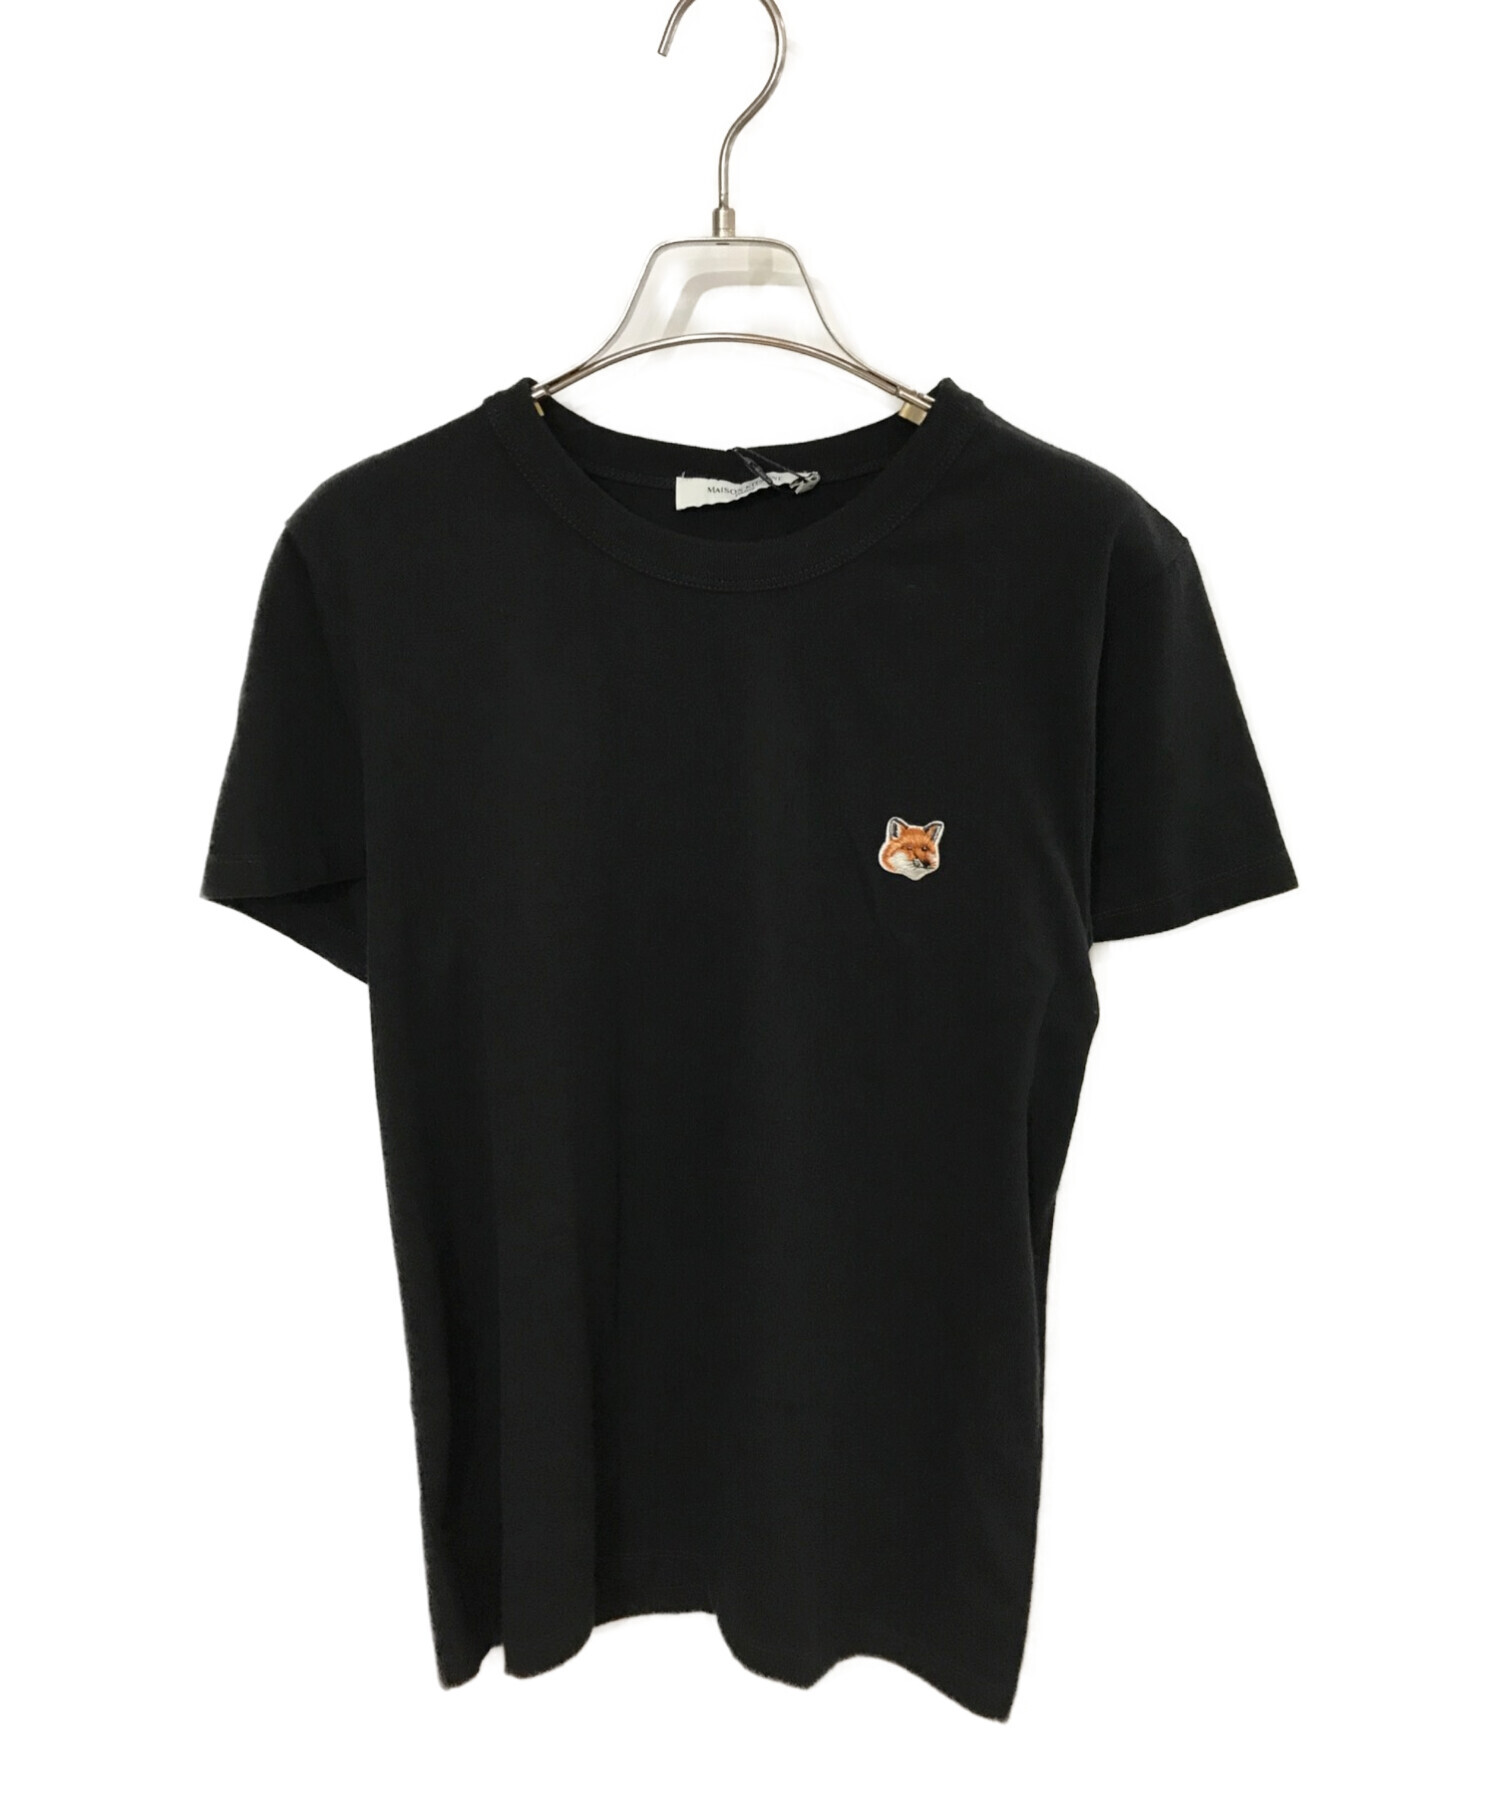 MAISON KITSUNE (メゾンキツネ) Tシャツ ブラック サイズ:M 未使用品